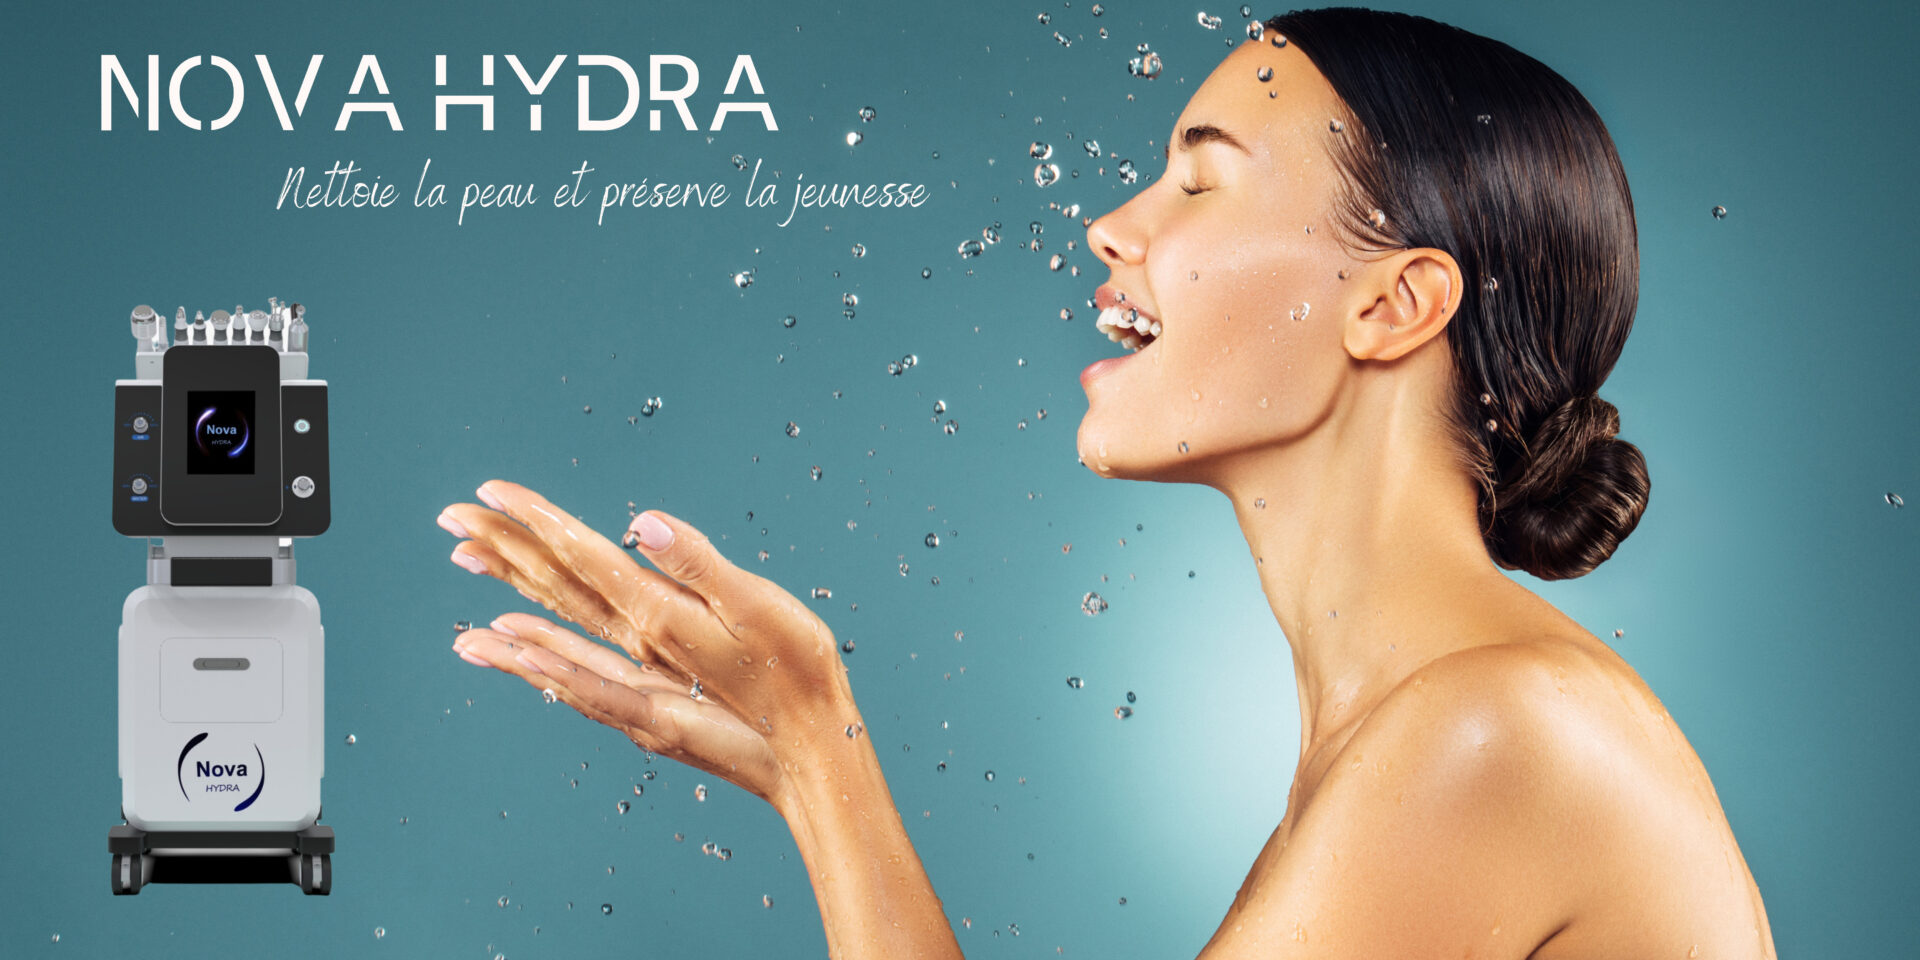 Nova hydra appareil professionnel type hydrafacial permet le nettoyage de la peau, l'hydratation et la régénération cellulaire